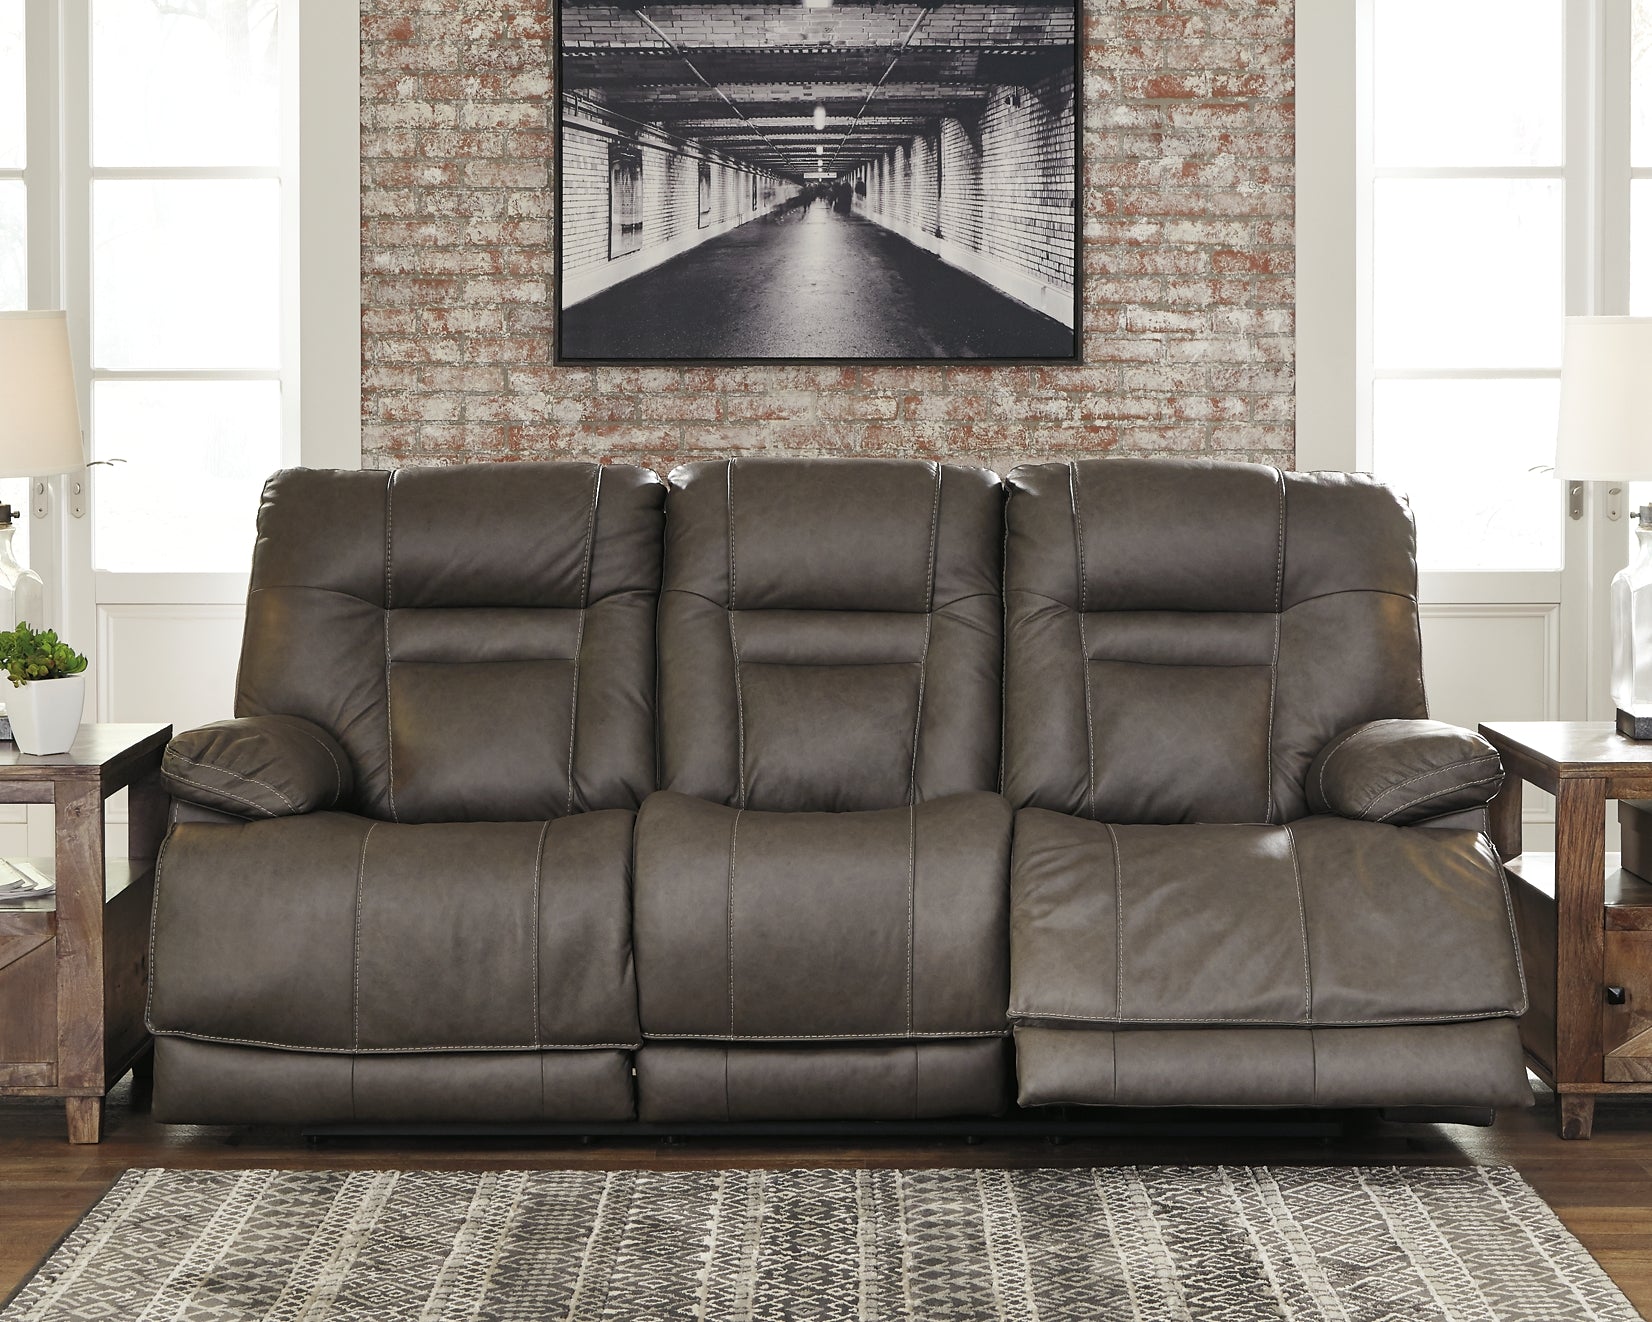 Wurstrow PWR REC Sofa with ADJ Headrest JB's Furniture  Home Furniture, Home Decor, Furniture Store